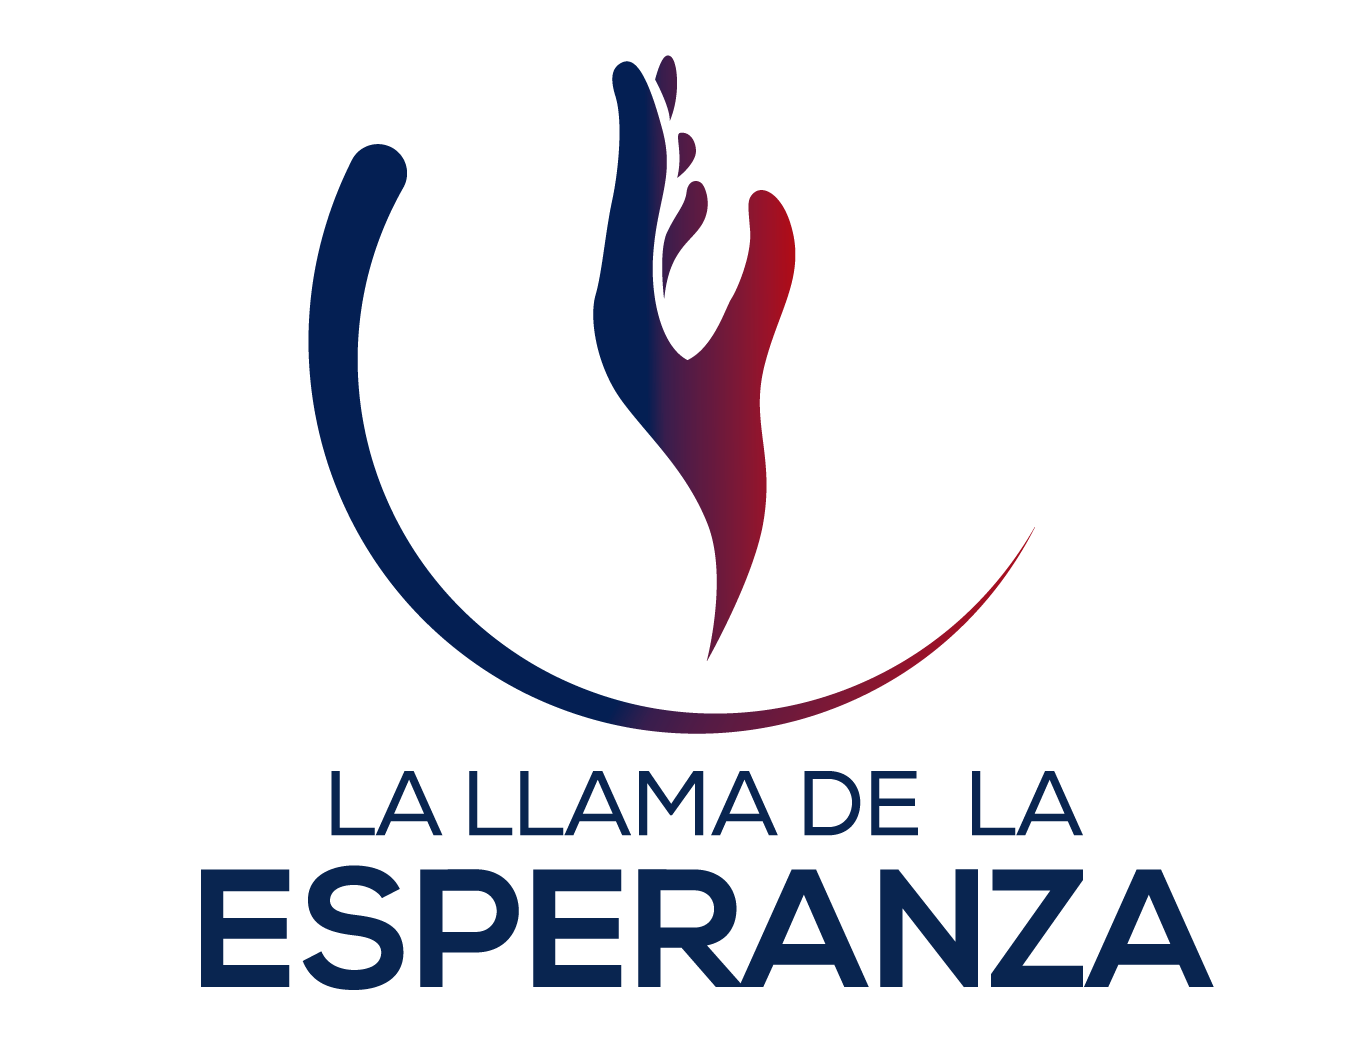 Esperanza Logo - LOGO LLAMA DE LA ESPERANZA 2018-01 - UMAD